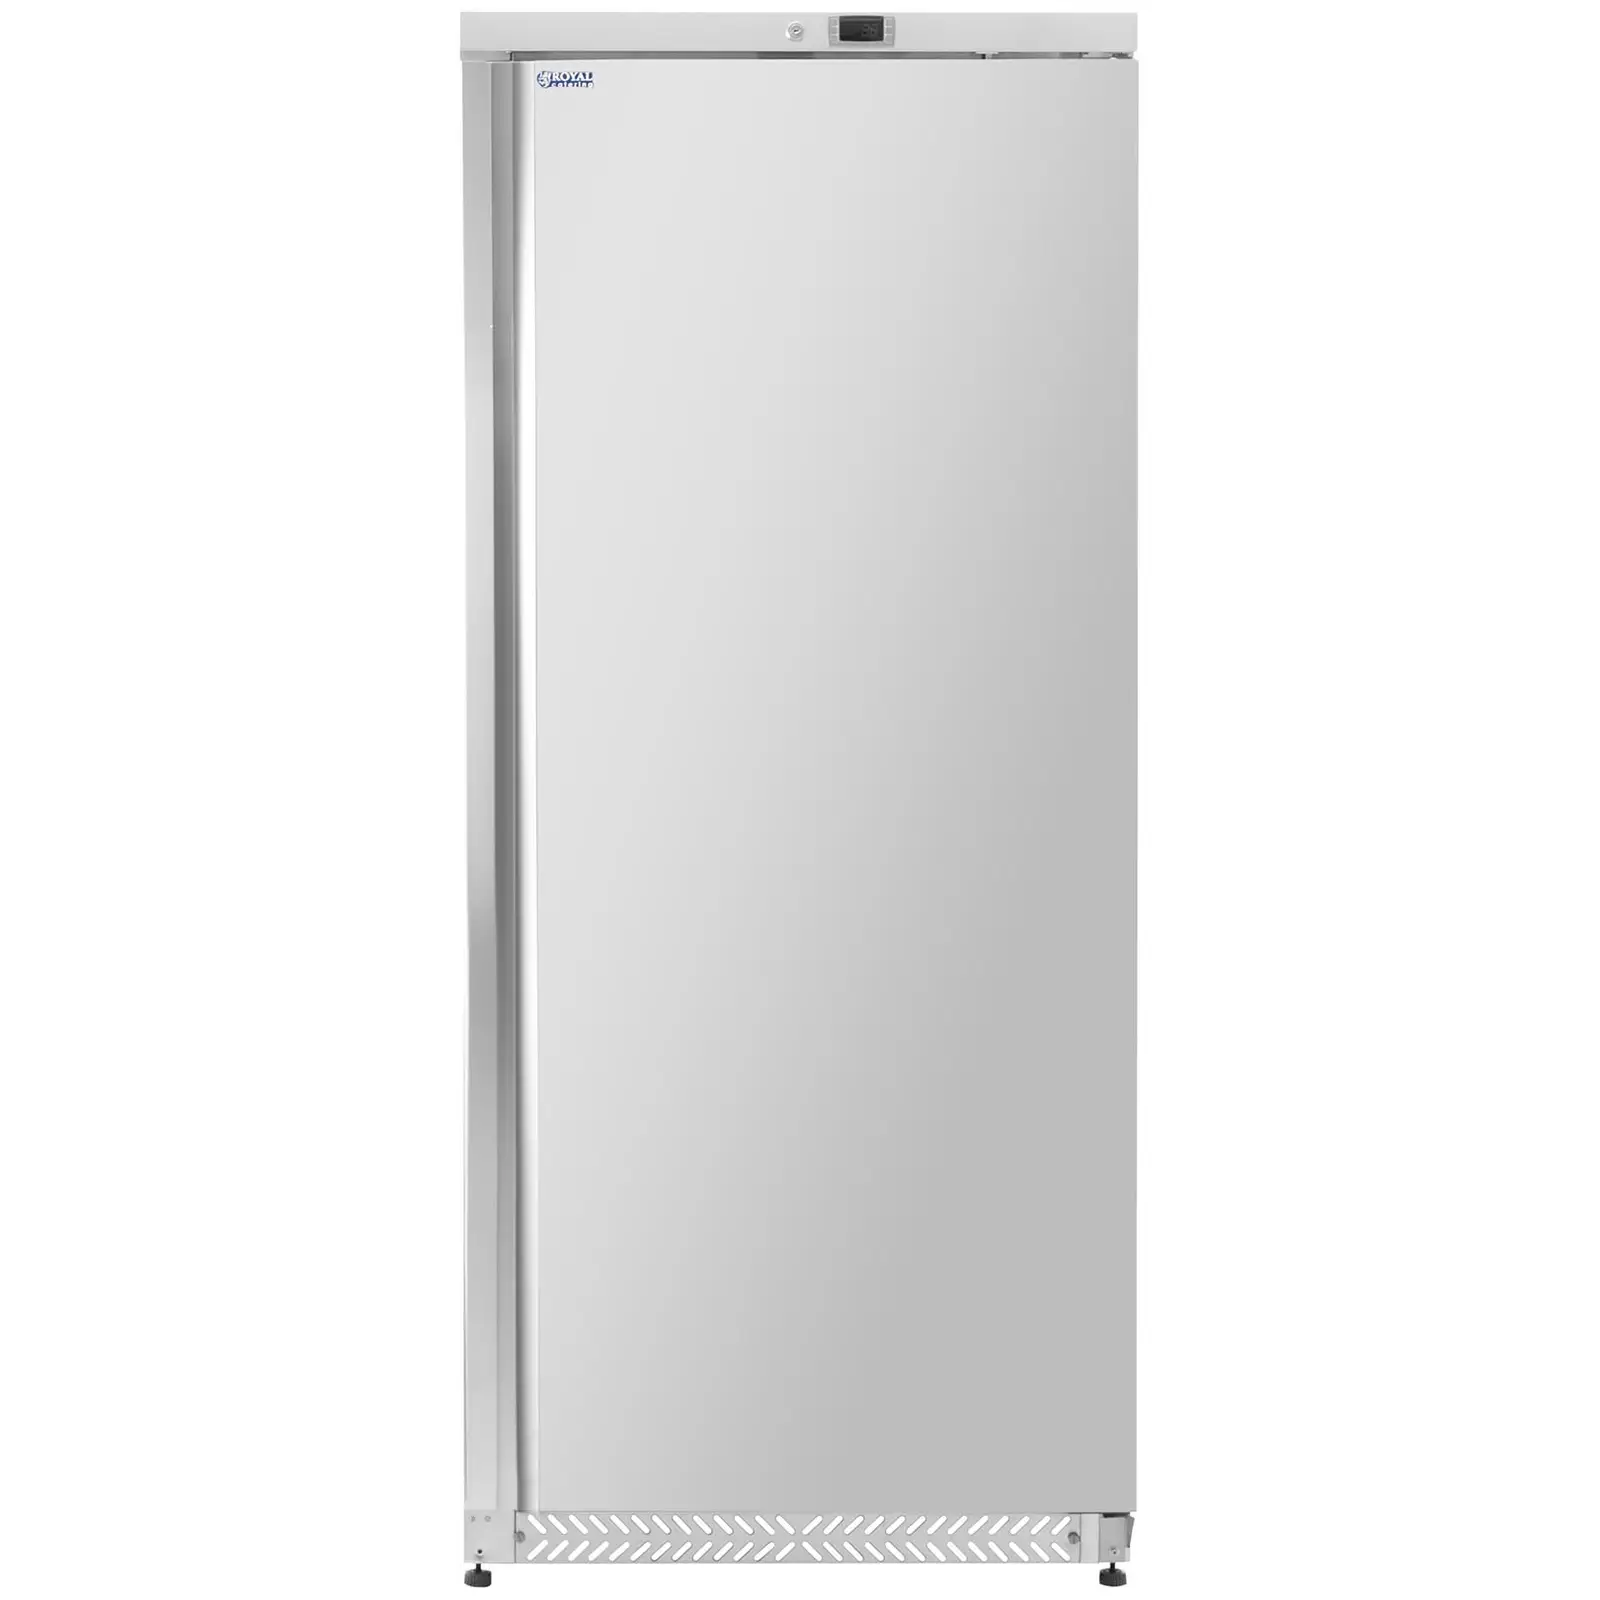 Congelador vertical - 590 L - Royal Catering - plateado - refrigerante R290